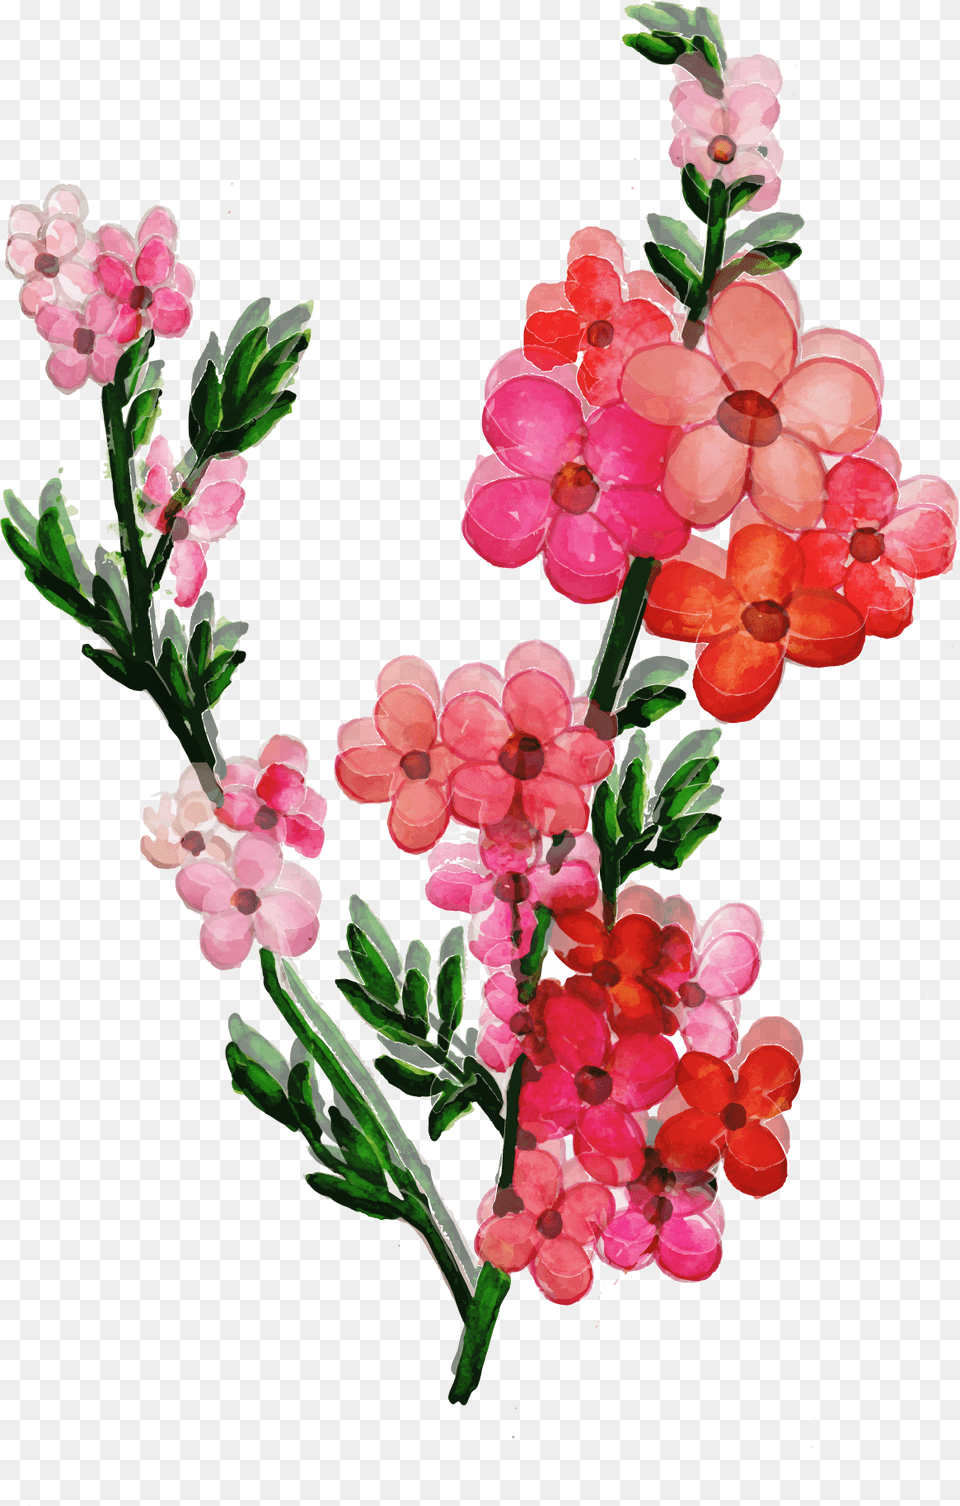 Artificial Flower, Petal, Plant, Geranium, Flower Arrangement Free Png Download